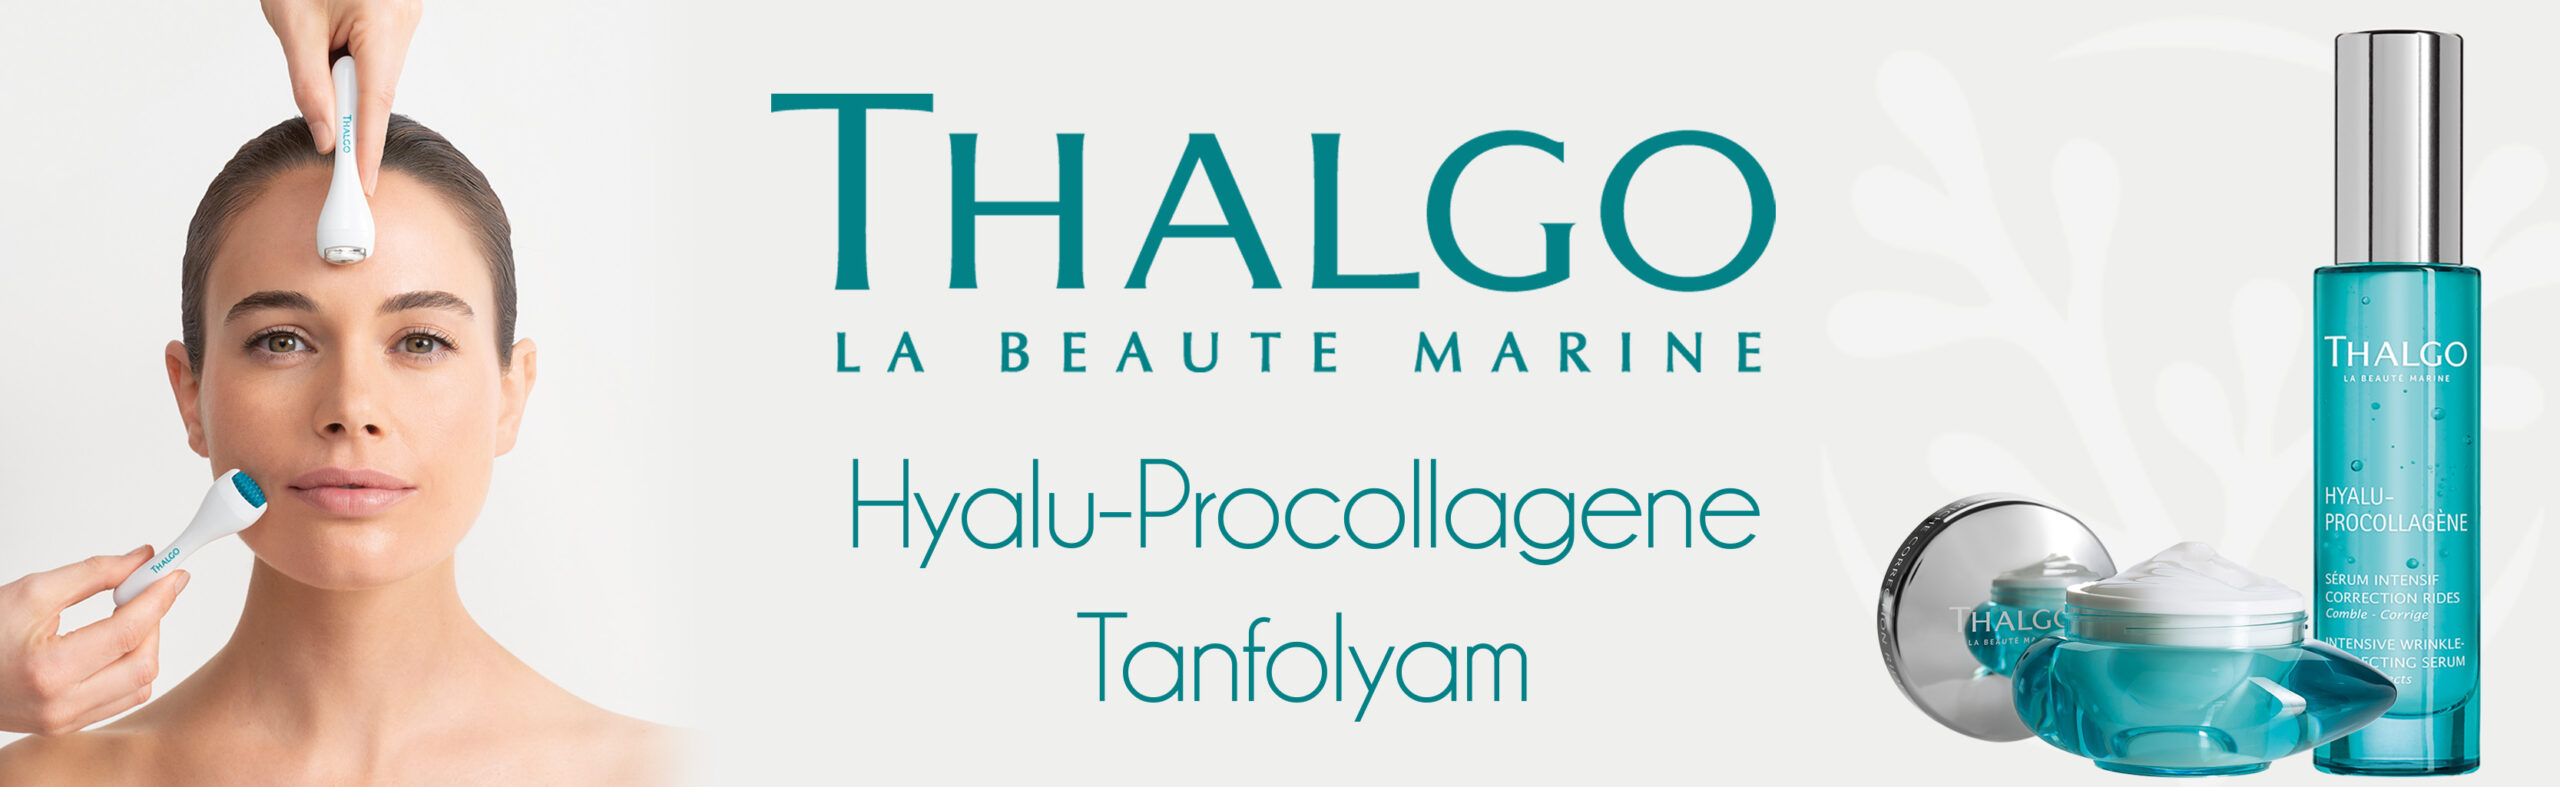 Thalgo Hyalu Procollagene Kozmetikuskepzes SLIDER uj copy scaled